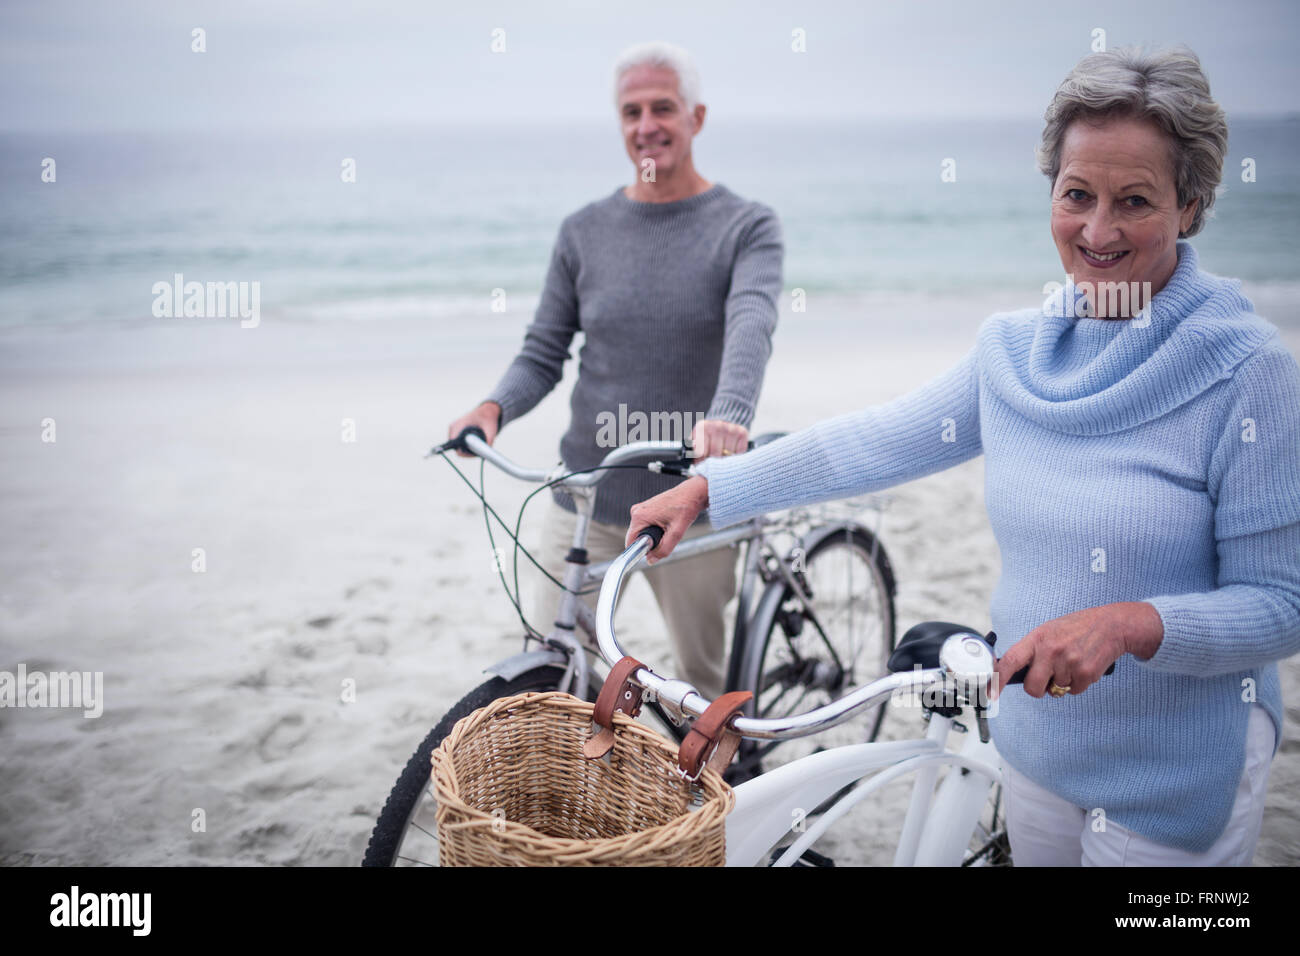 Happy senior couple with their bike Stock Photo